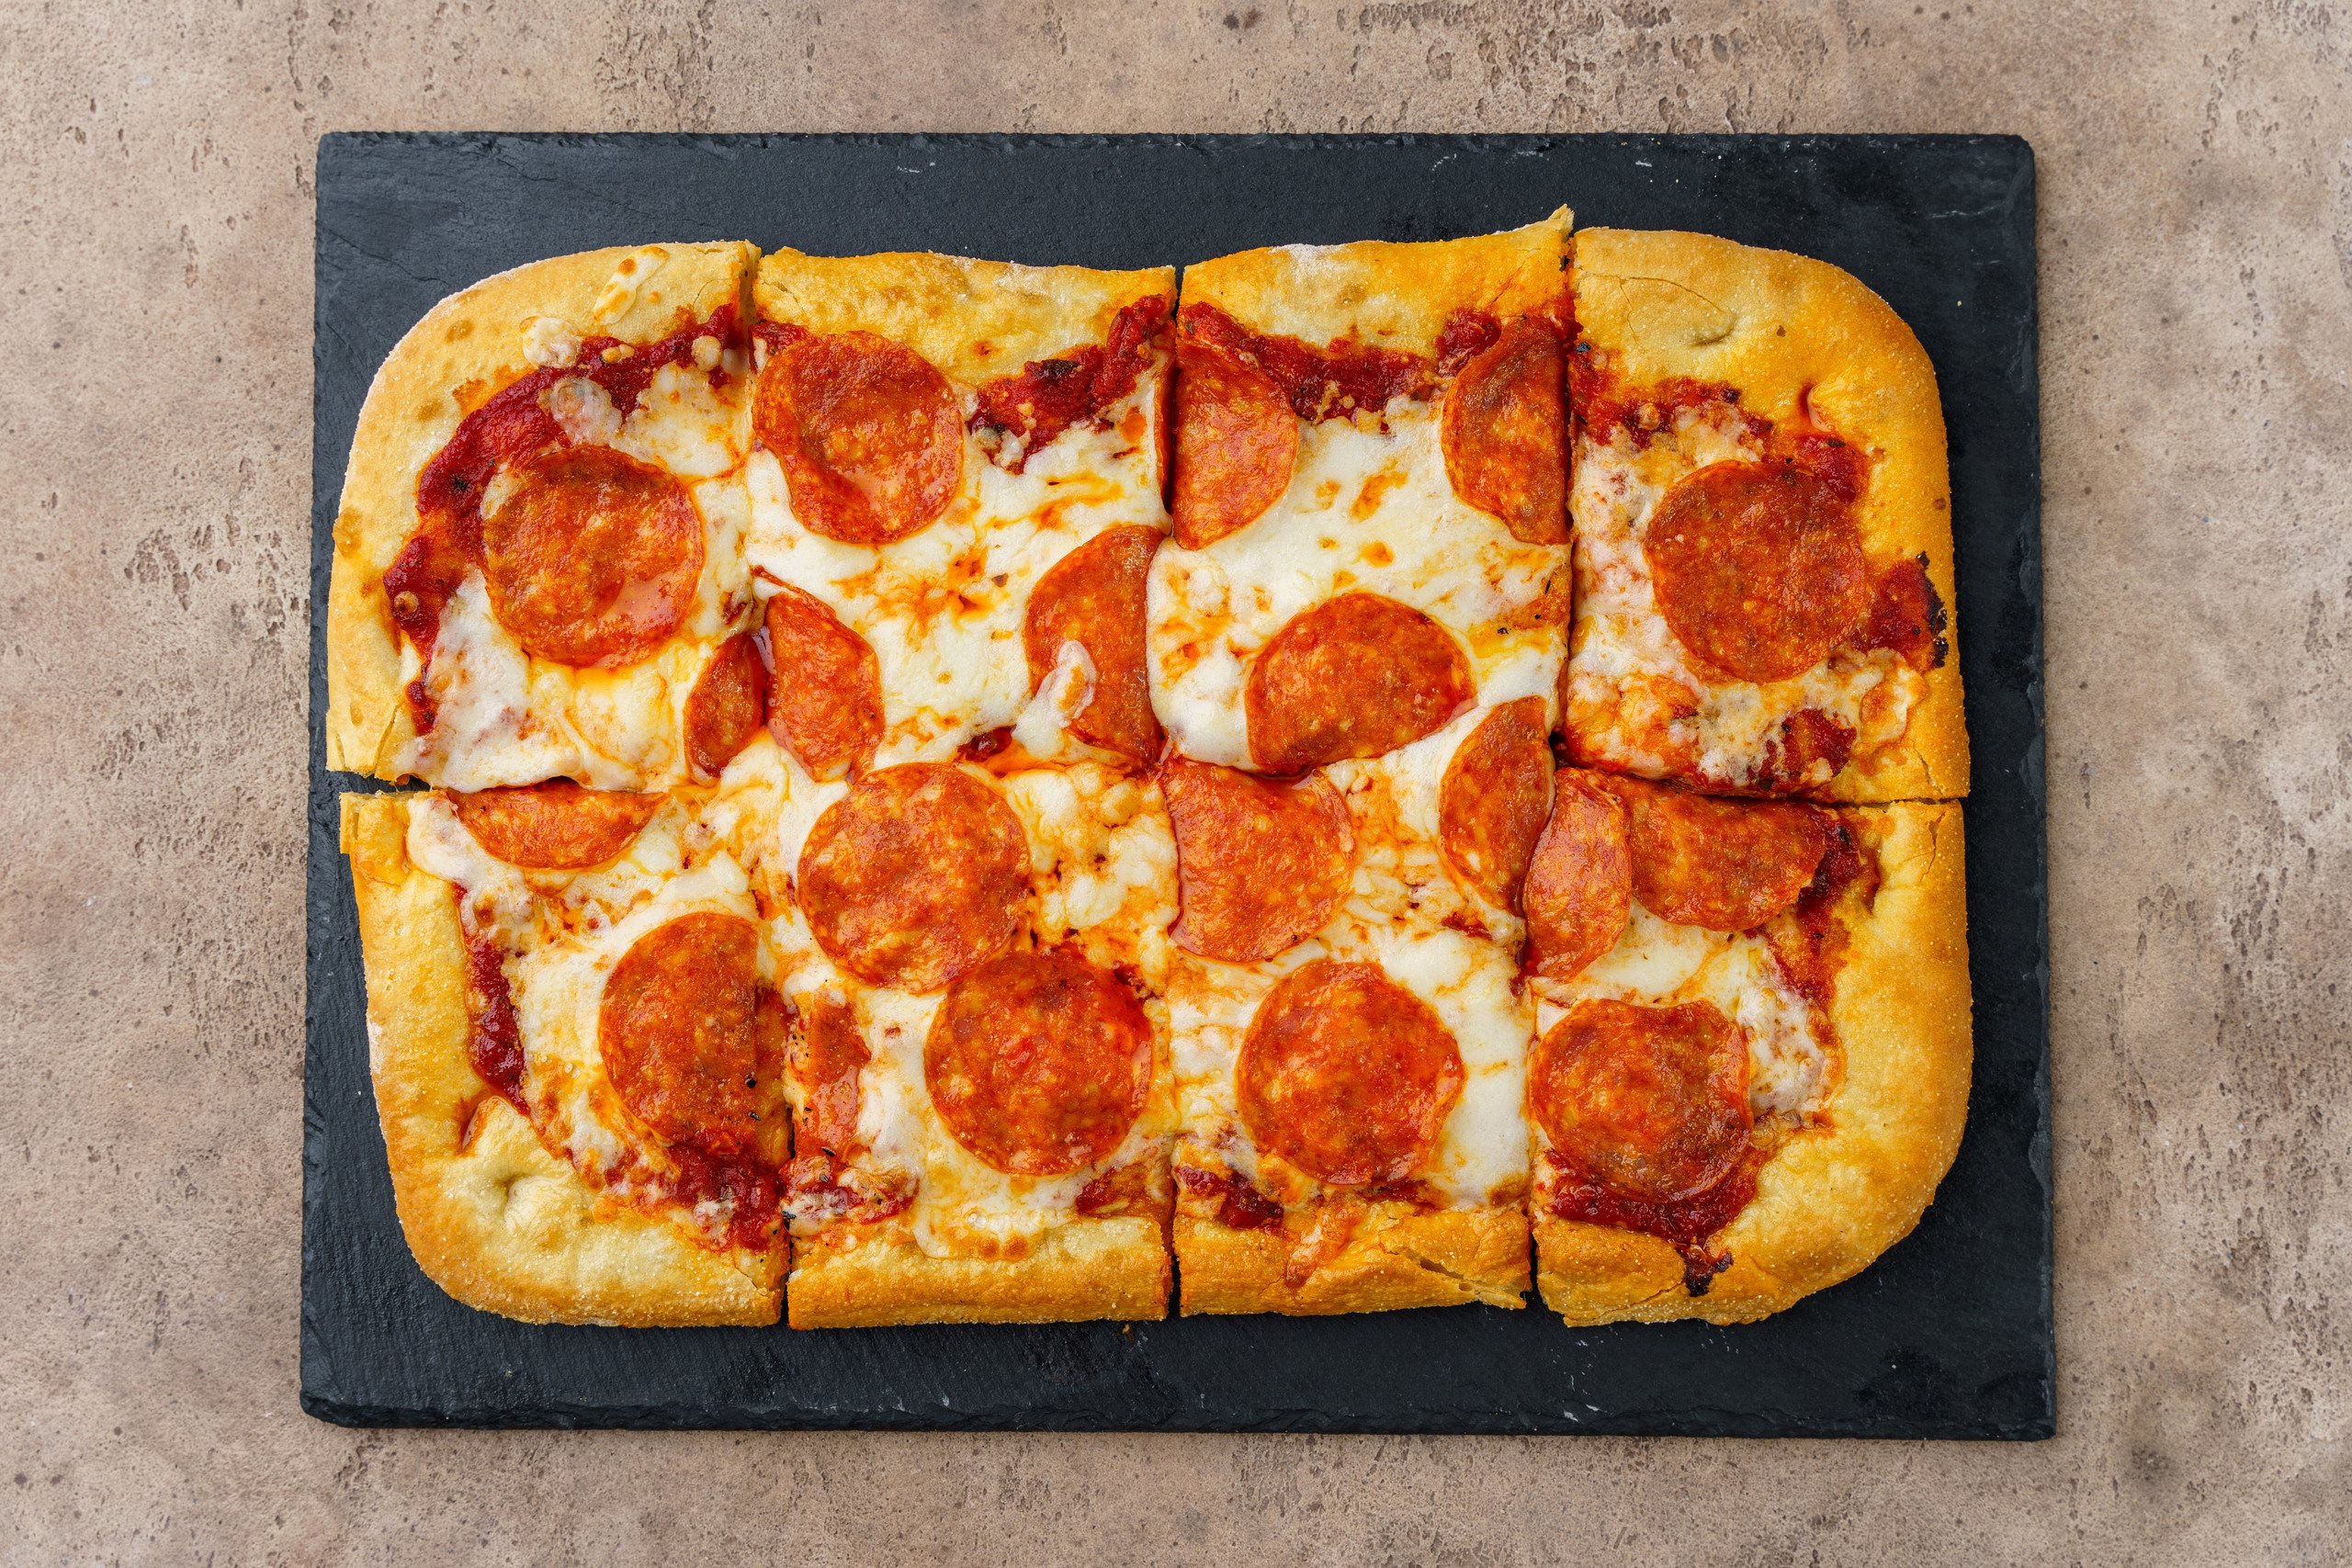 хорошая пицца отличная пицца аромат соуса пробуждает страсти пепперони и сыр на равные части фото 119